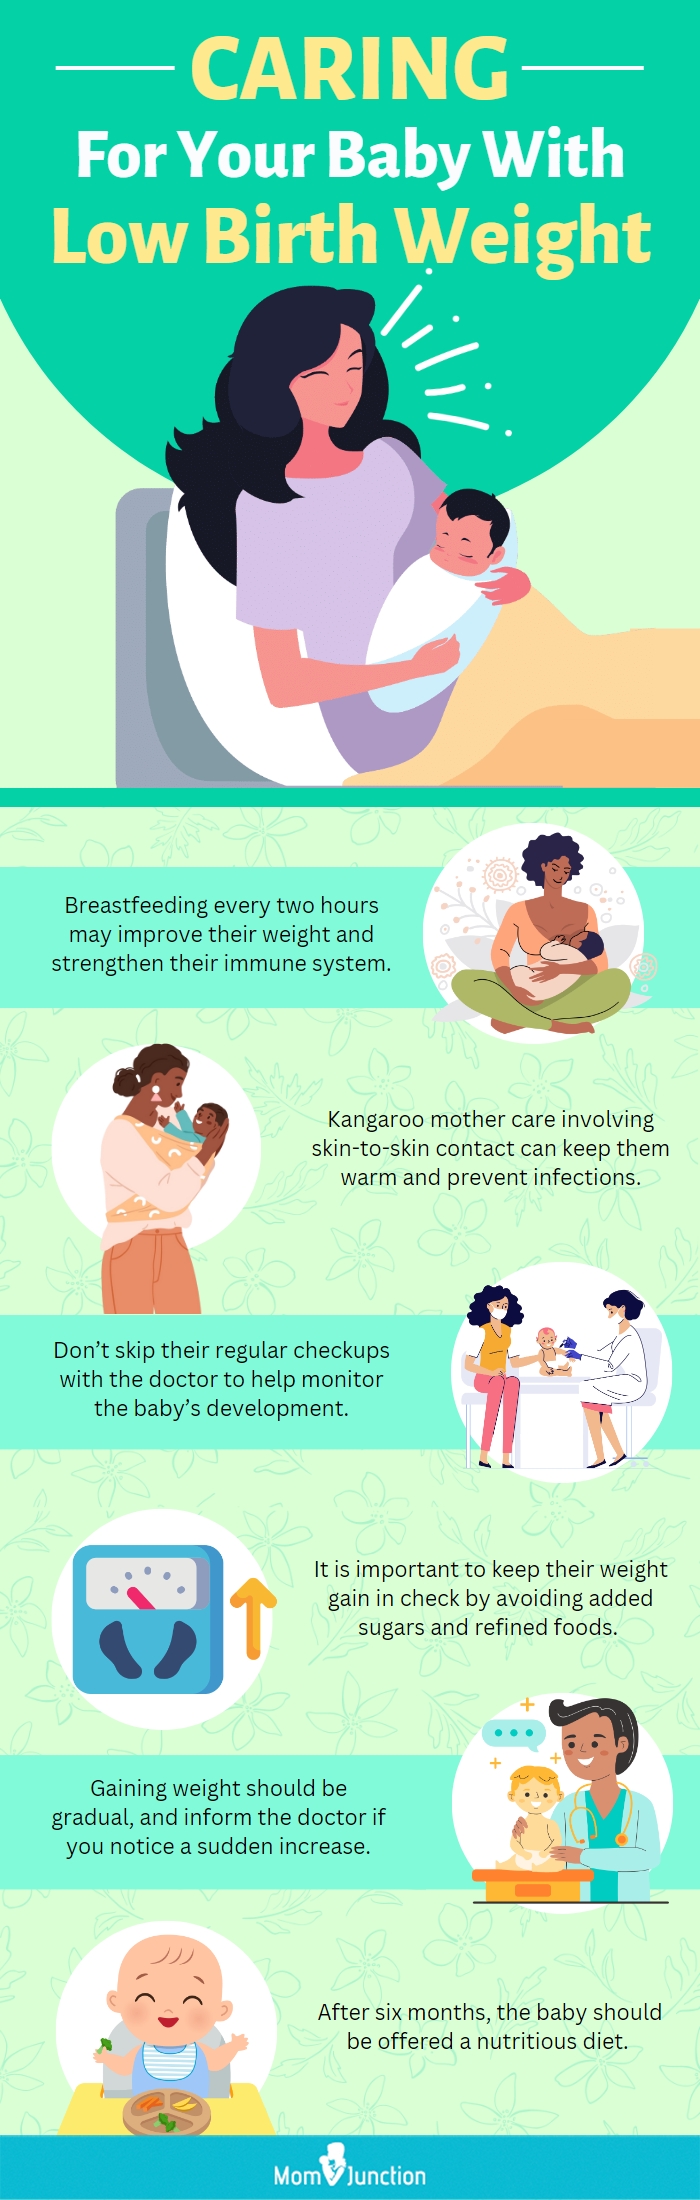 照顾低出生体重婴儿(资讯图)